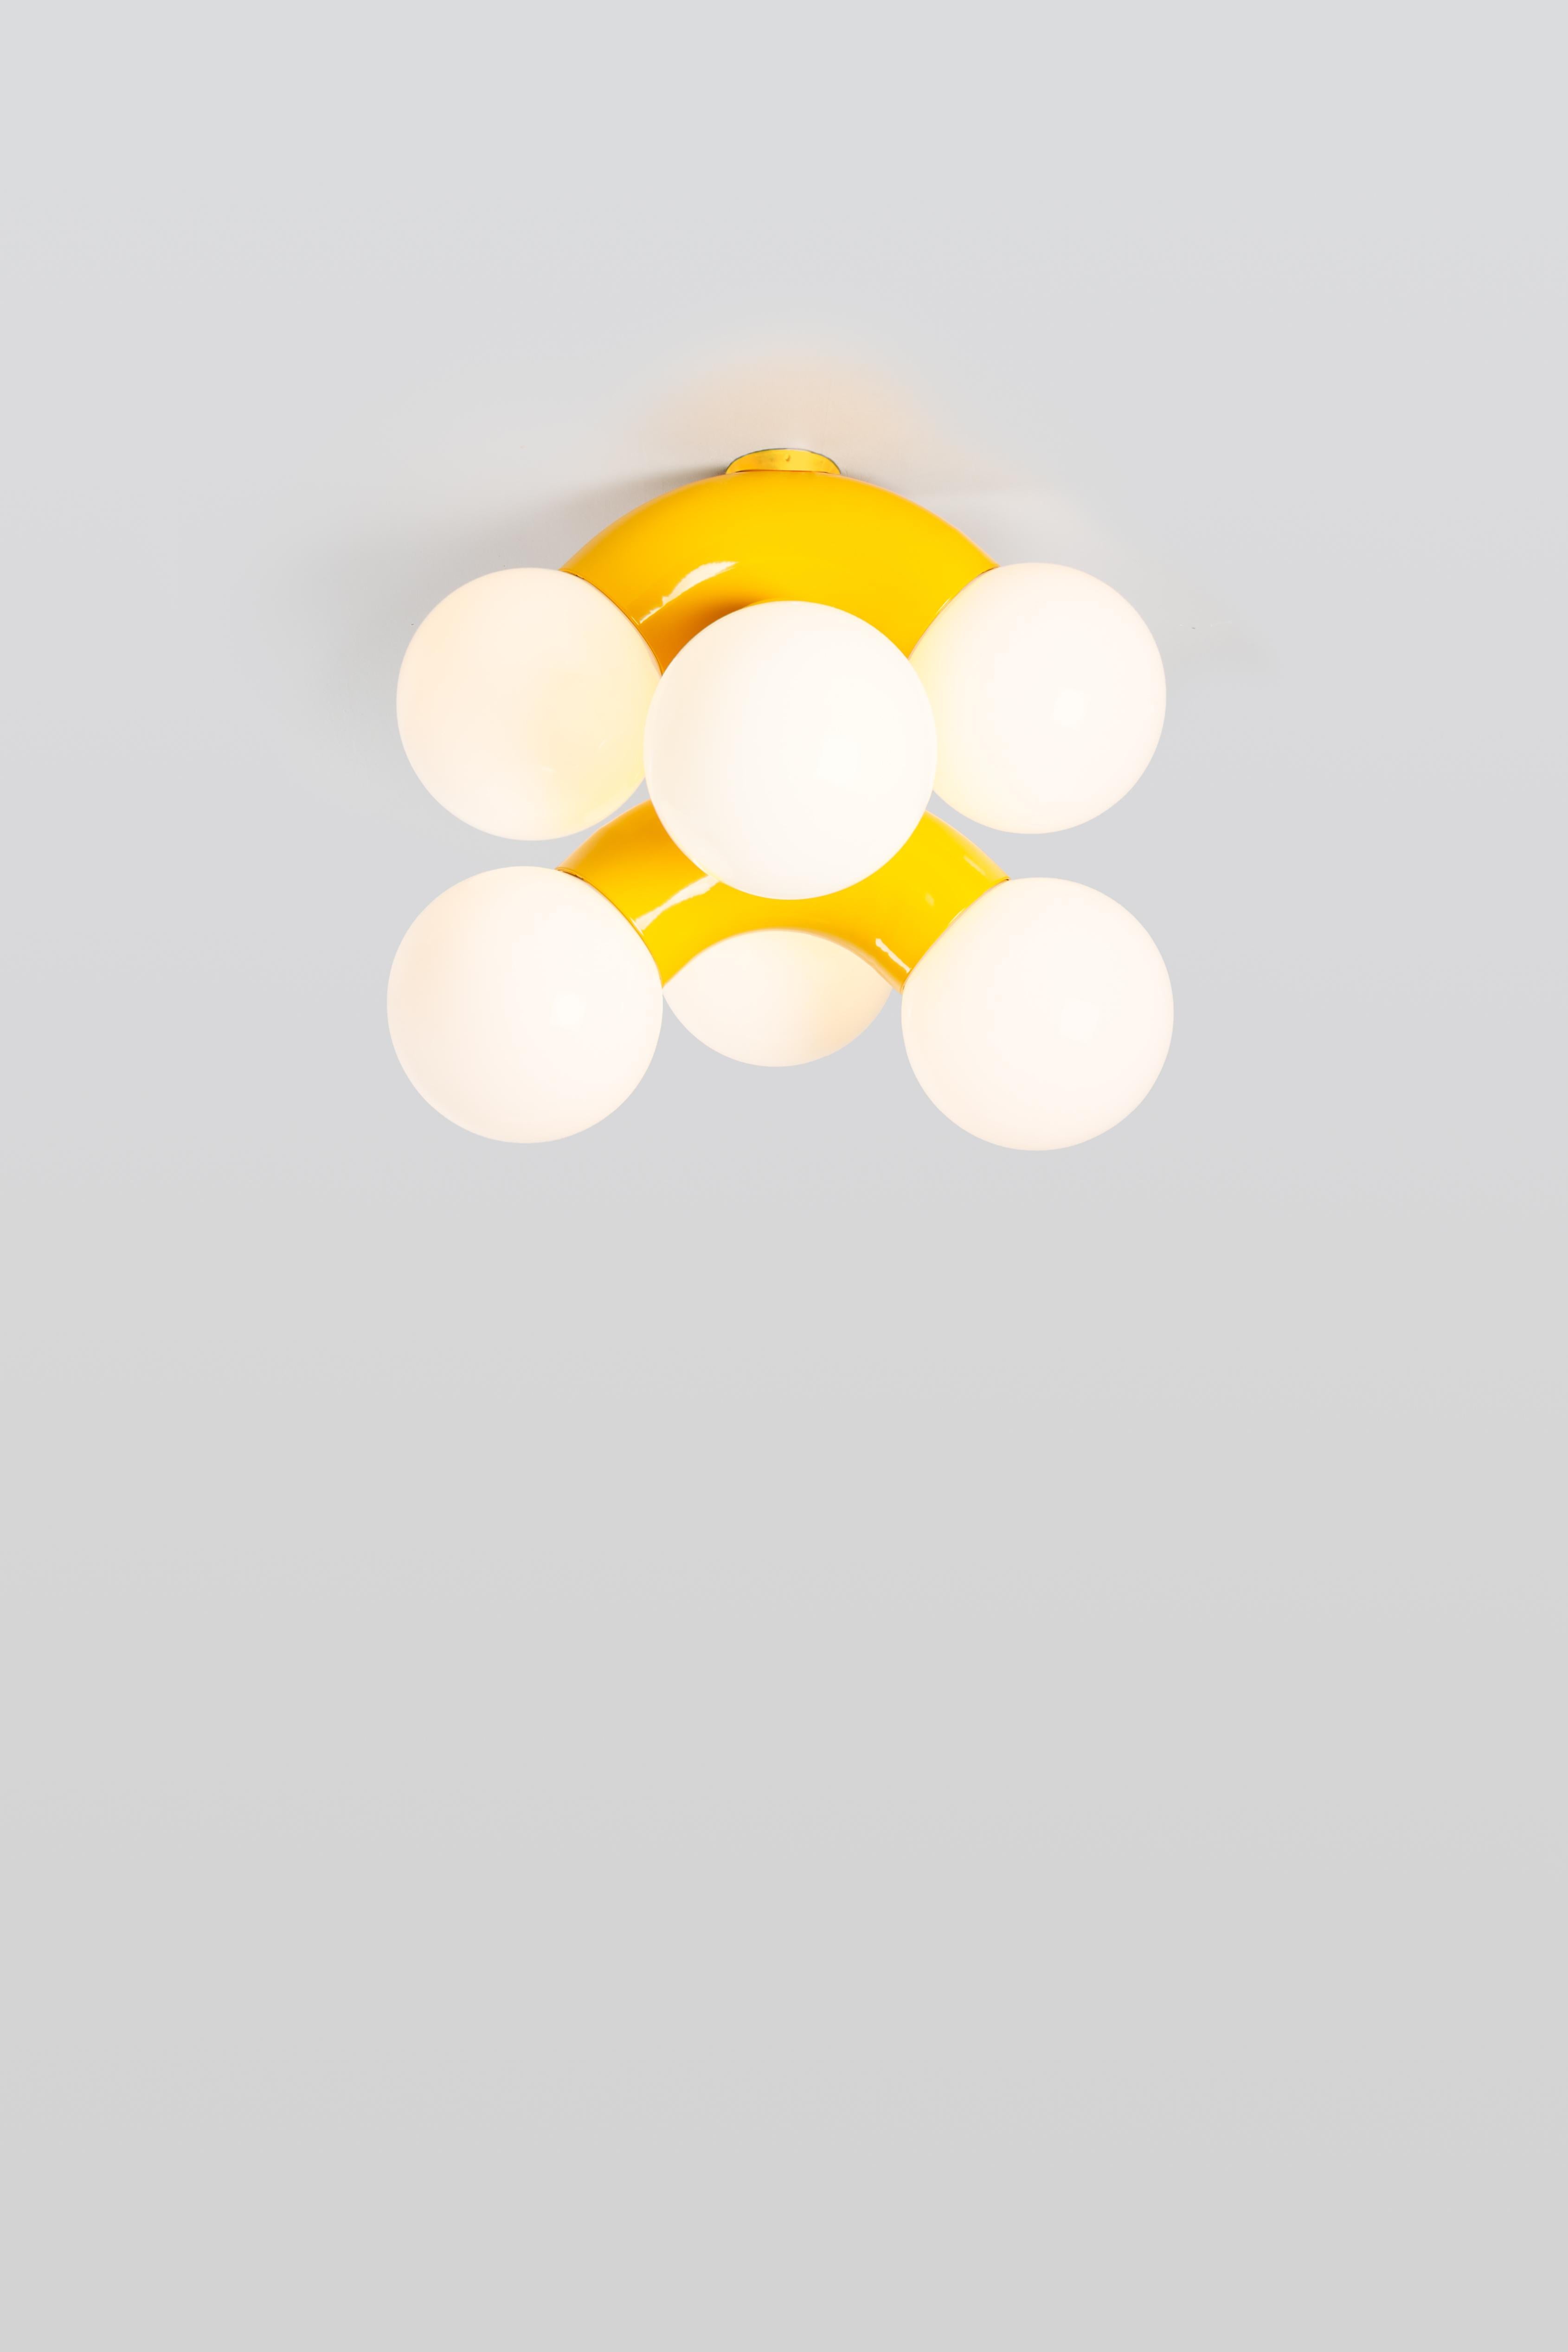 VINE 3-C, lampe de plafond
Design/One : Caine Heintzman, Rédacteur en chef : ANDLight

Le plafonnier vine combine une forme exagérée avec la propension à la répétition, ce qui donne un luminaire ambitieux à échelle verticale.

Matériaux
-